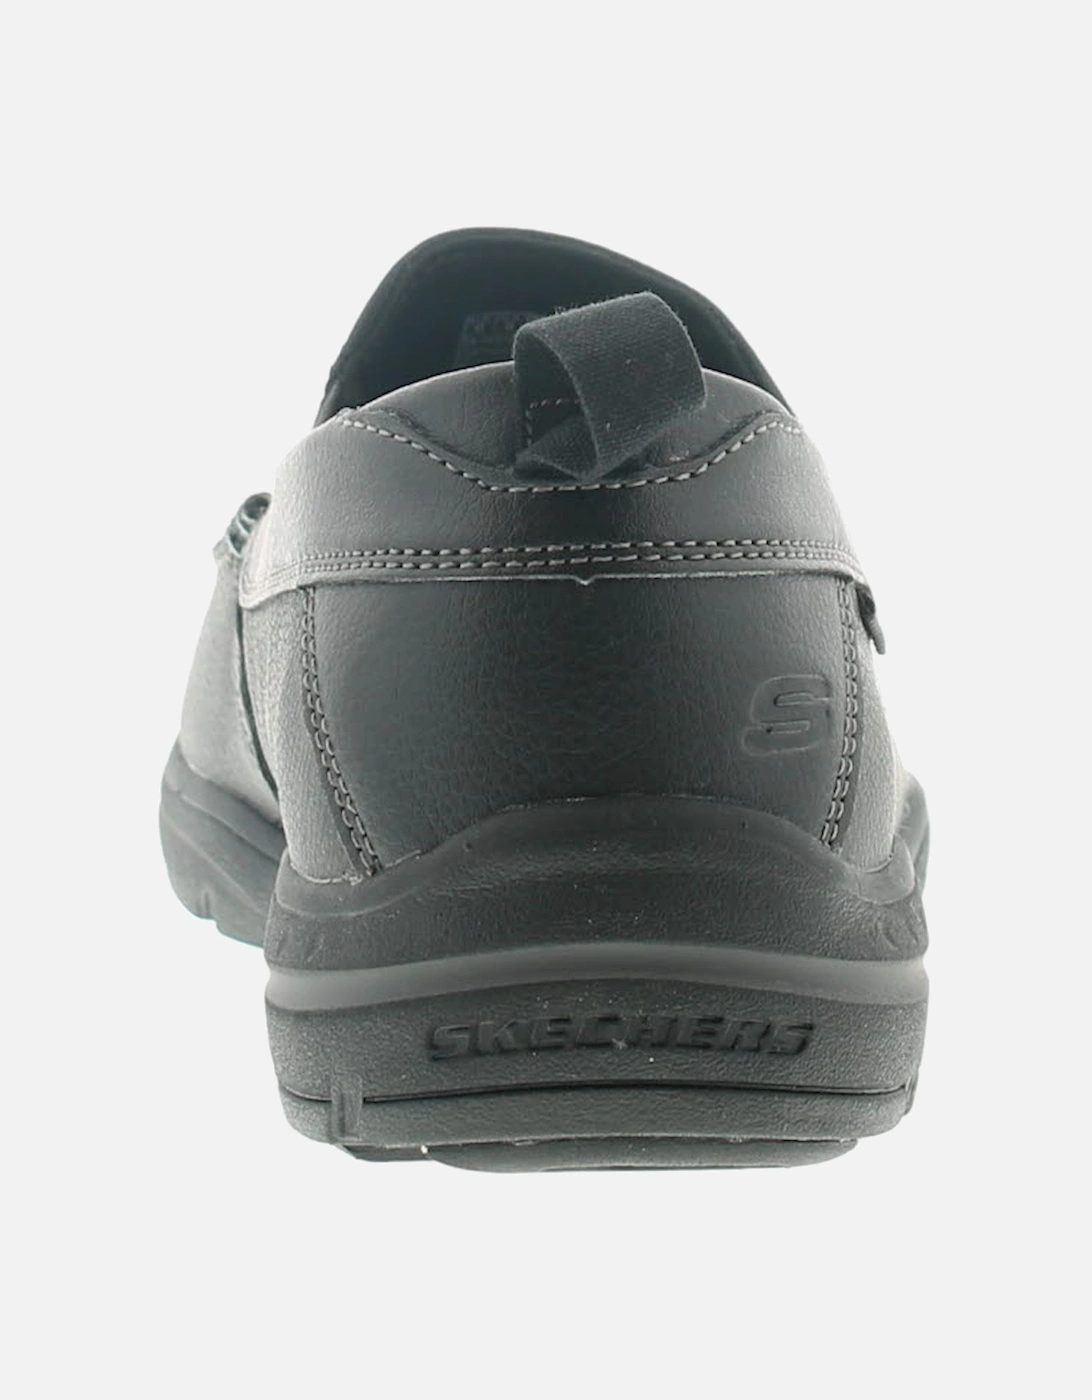 Mens Casual Shoes Harper Forde Slip On black UK Size